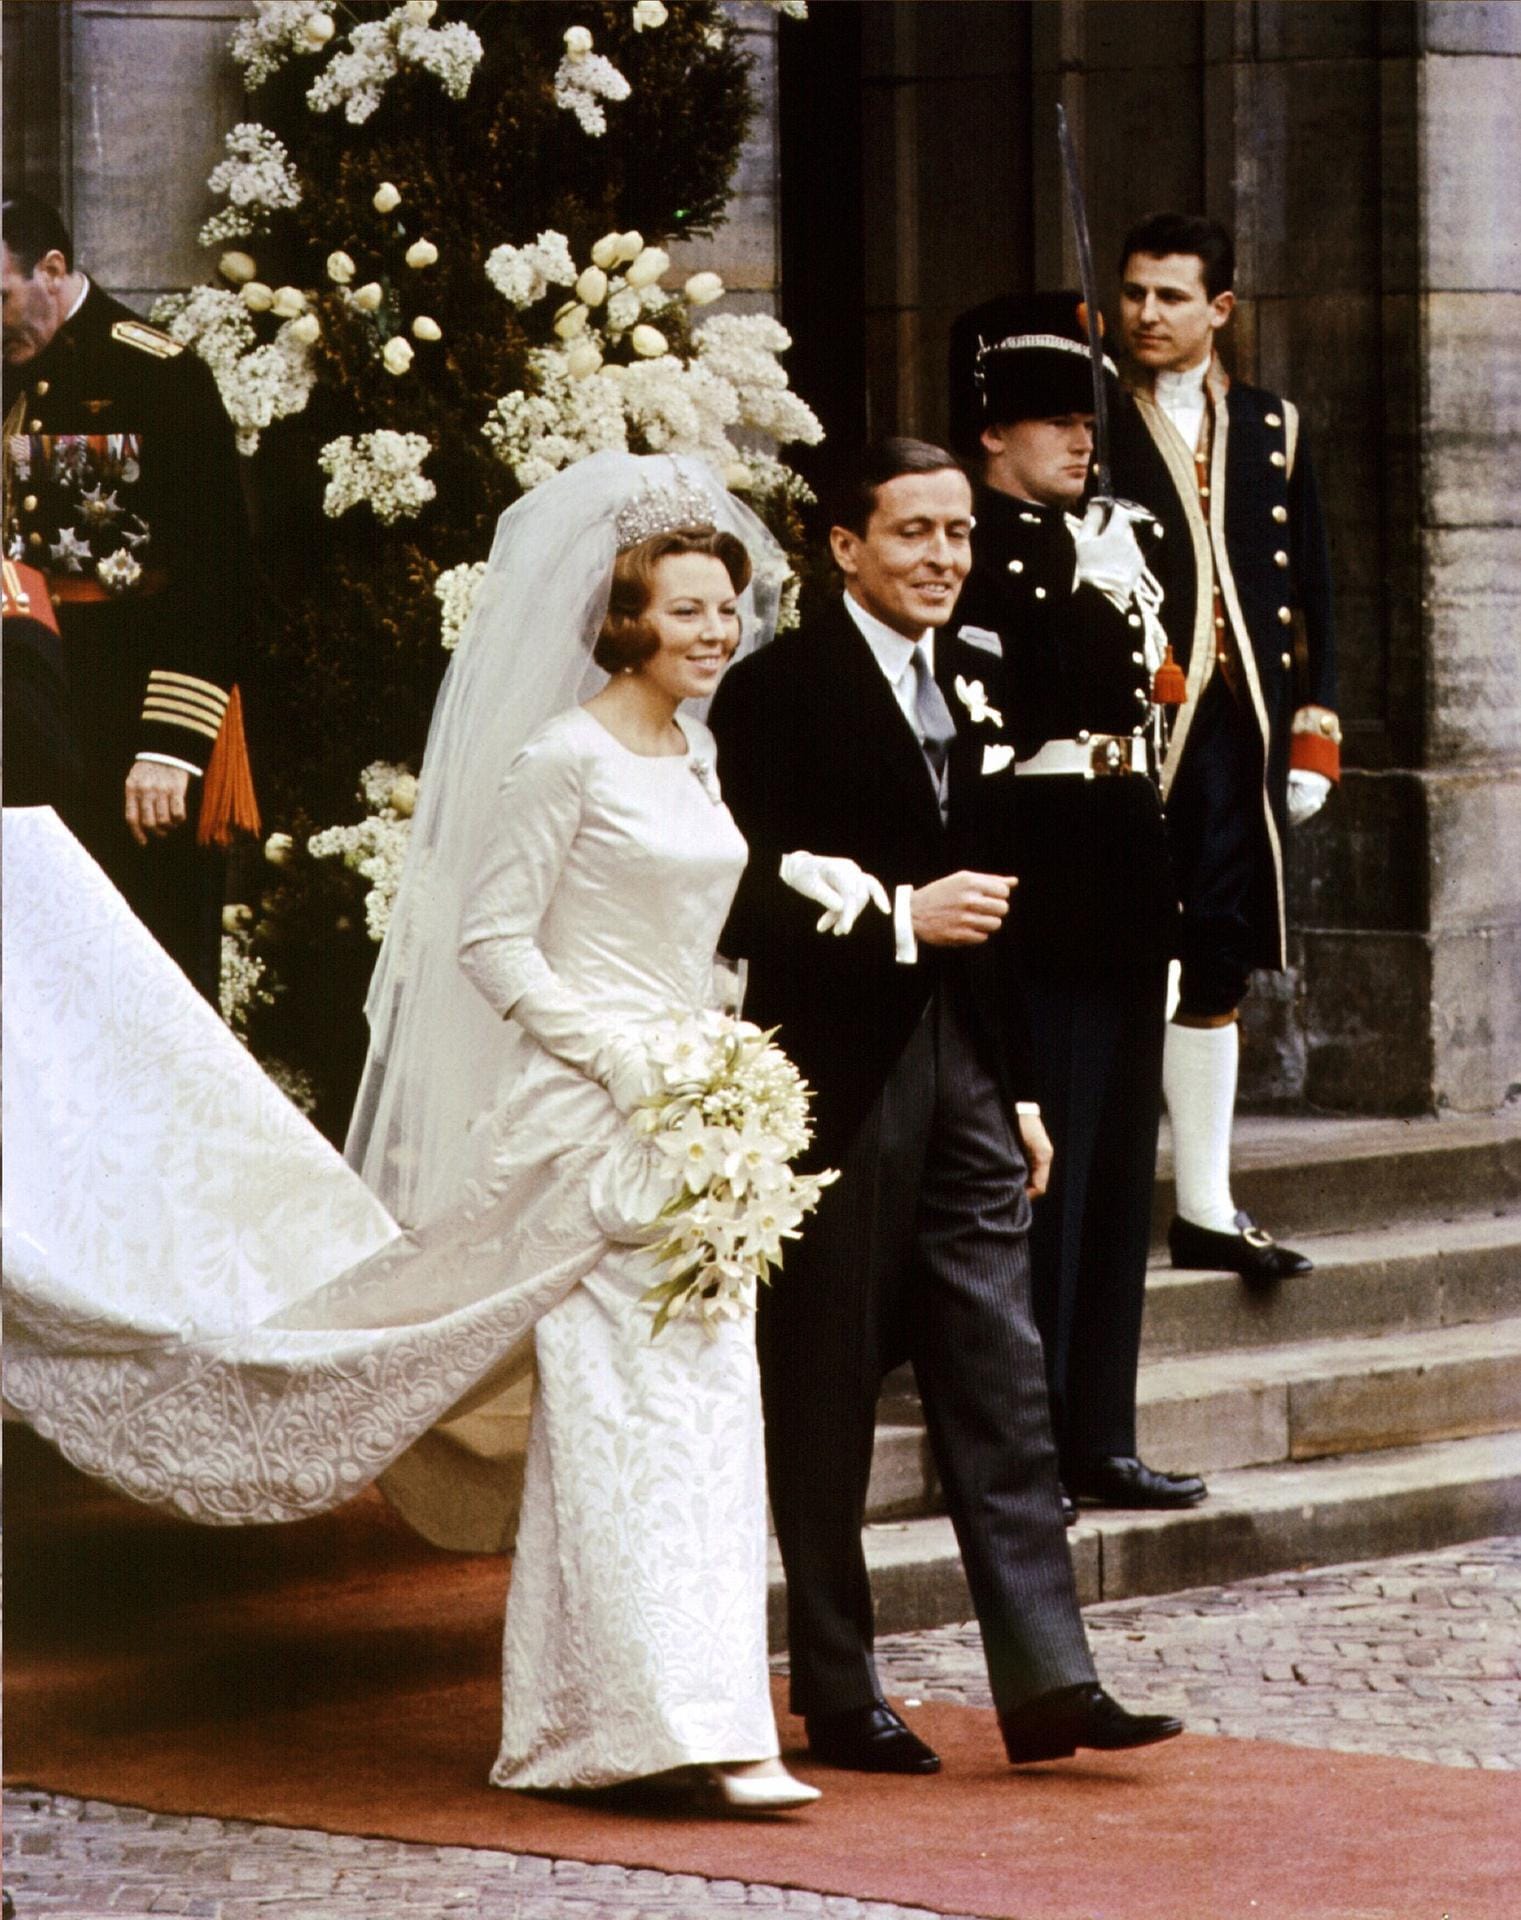 1966 heiratet Königin Beatrix der Niederlande - damals noch Prinzessin - Claus von Amsberg. Vielen niederländischen Diplomaten gefiel das gar nicht, denn Amsberg war Deutscher. Doch man kann sich nun mal nicht aussuchen, wo die Liebe hinfällt - auch als Royal nicht. Und im Laufe der Jahre wurde Prinz Claus zu einem der beliebtesten Mitglieder der Königsfamilie, bis er 2002 verstarb.